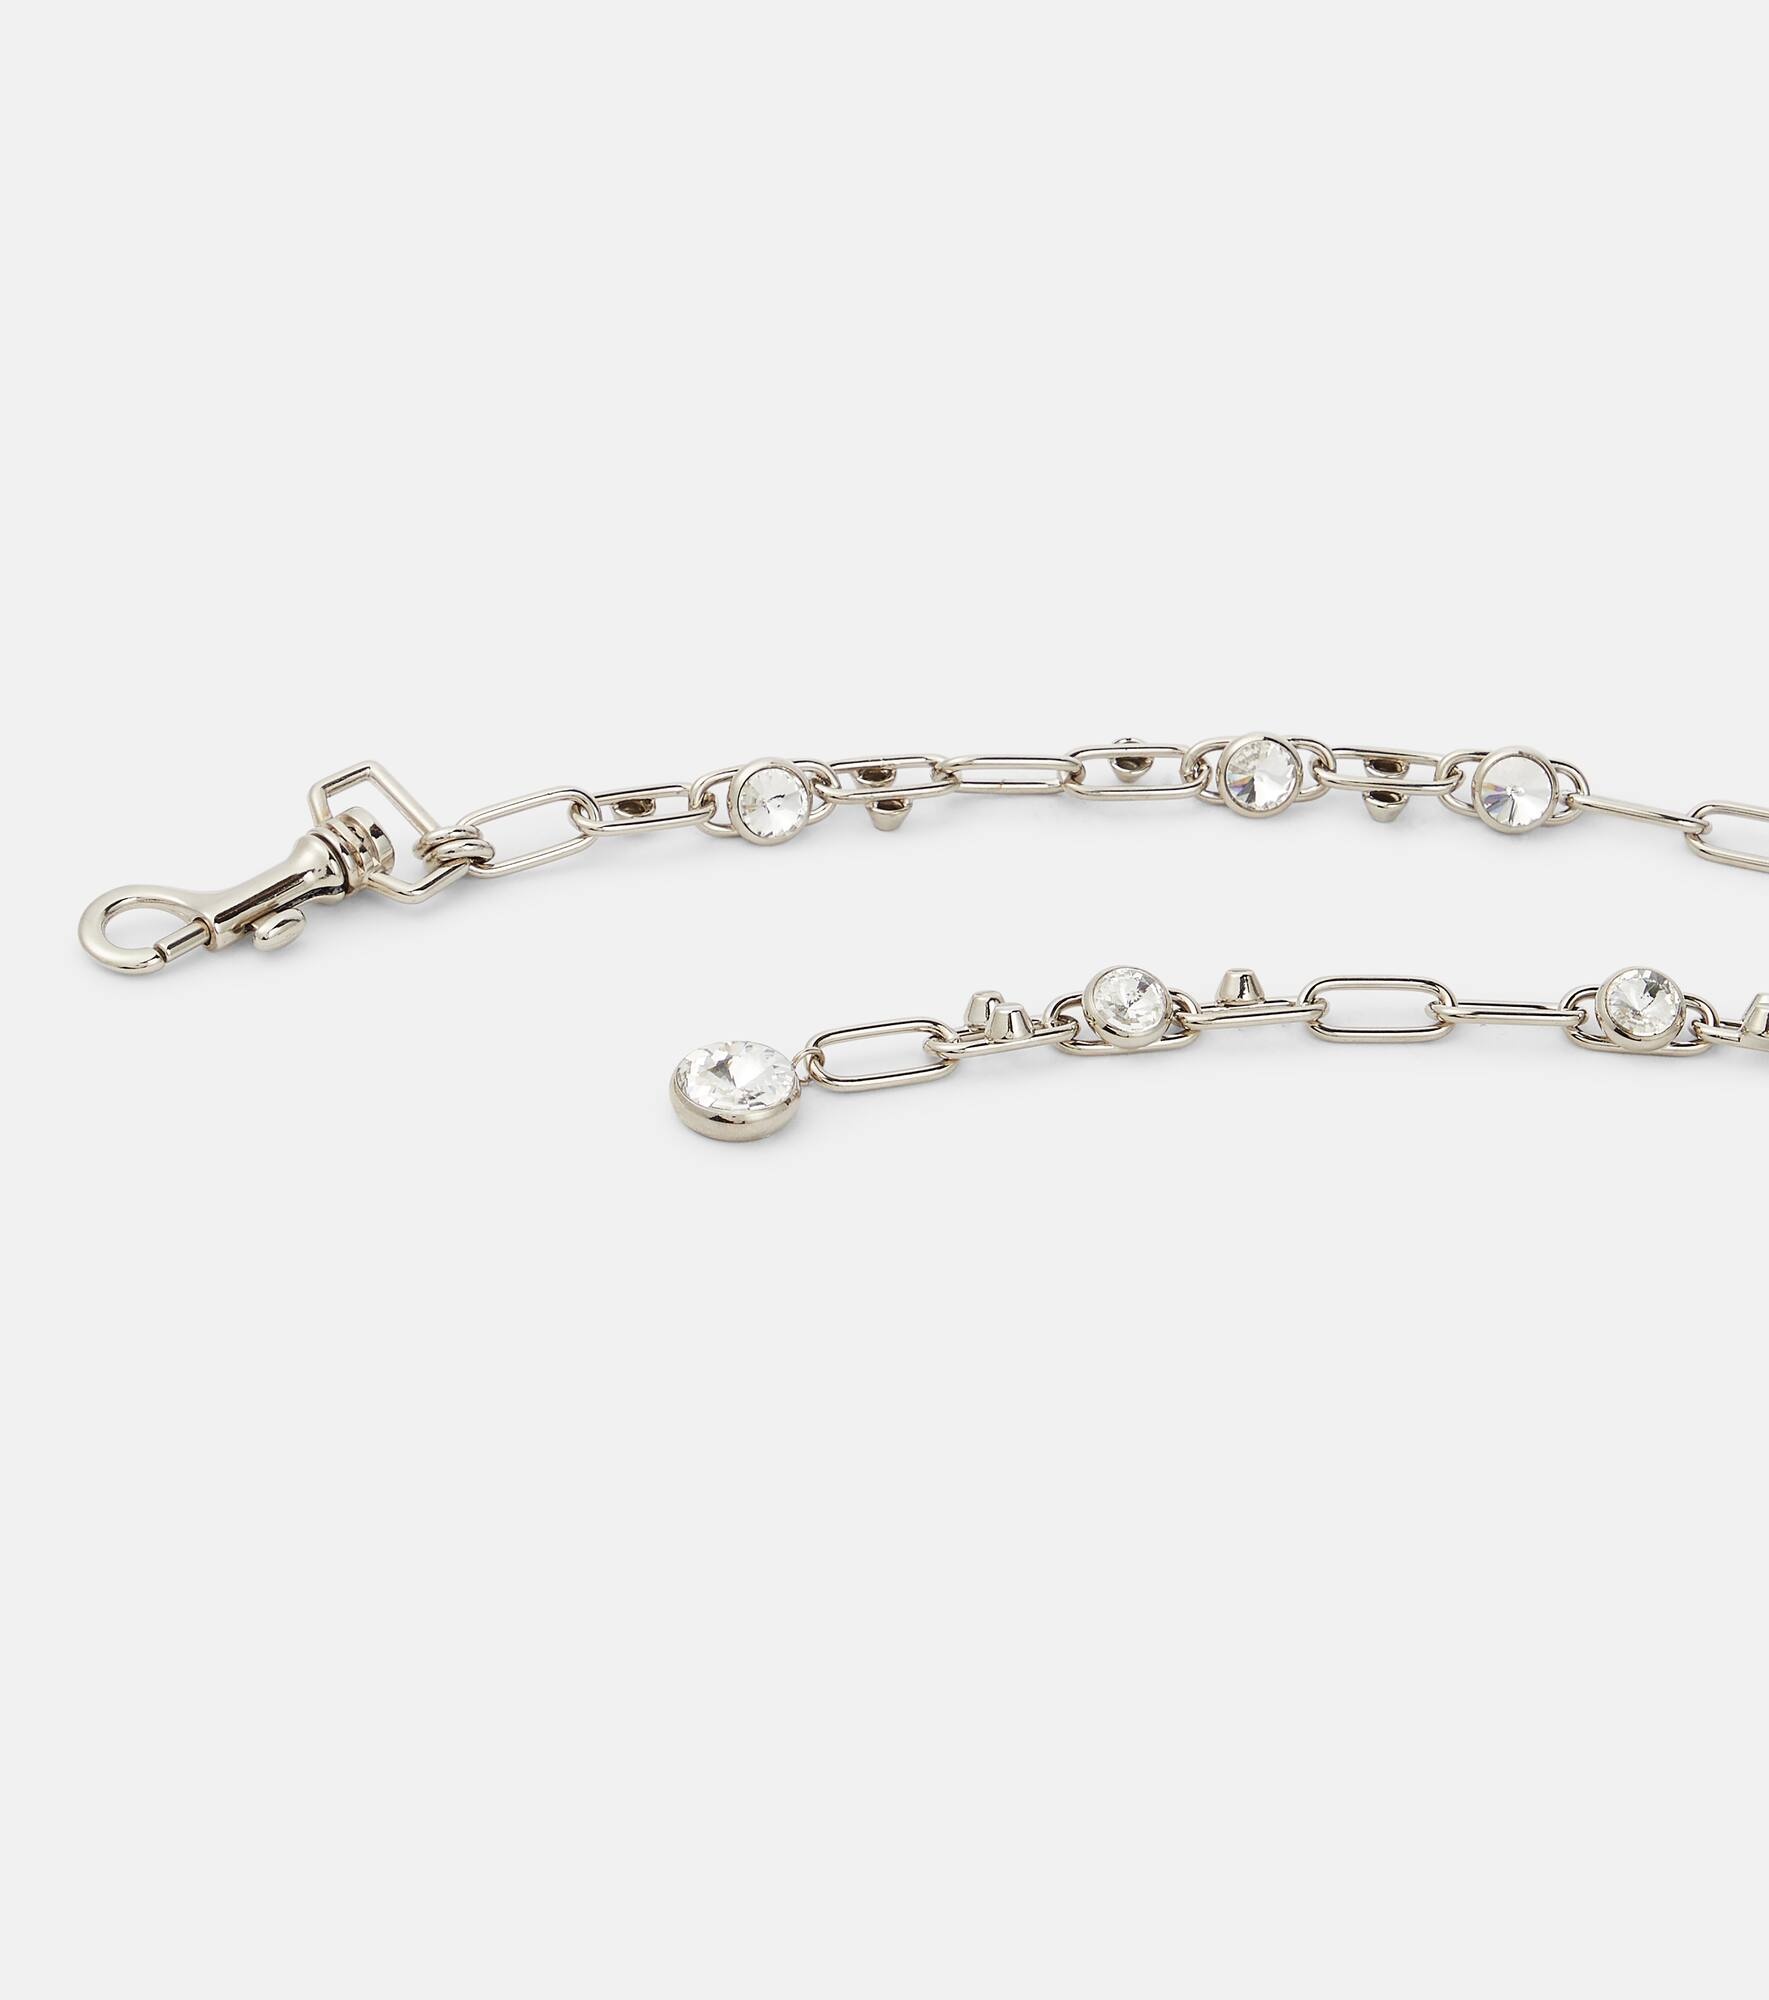 Embellished chain belt - 3